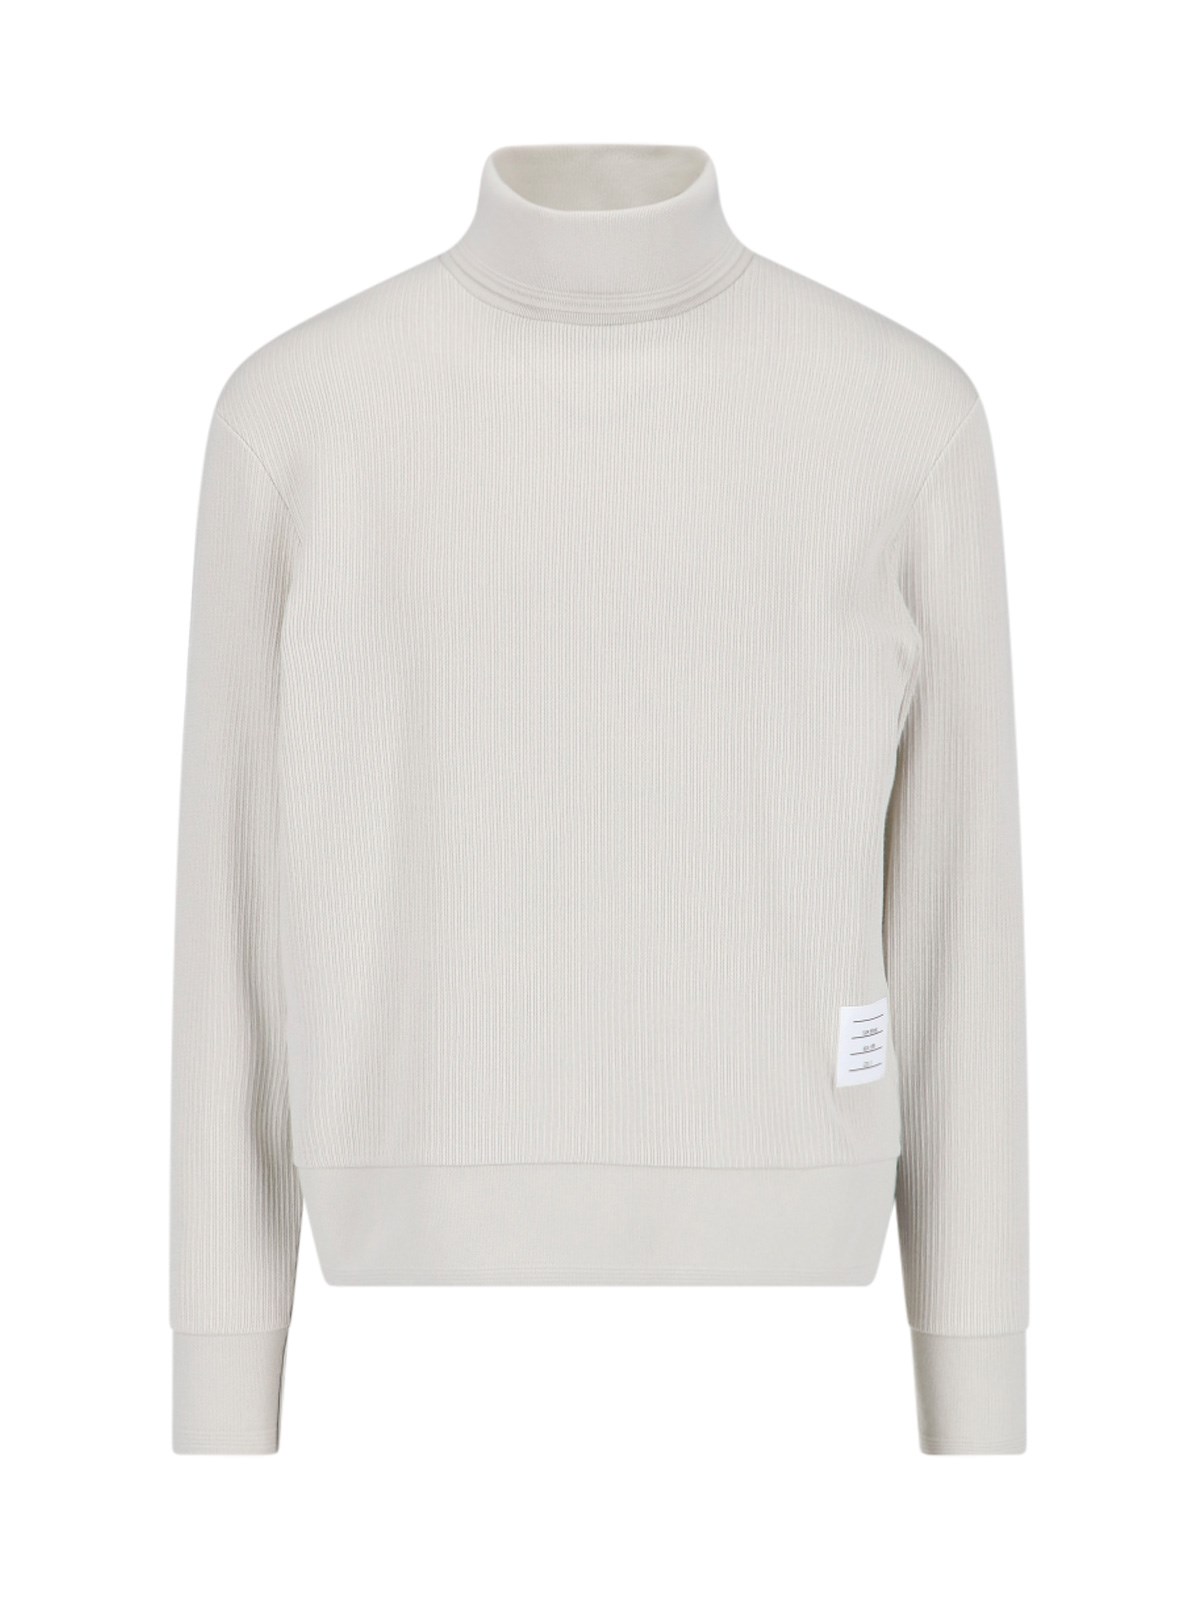 Thom Browne Logo Sweater In Cream